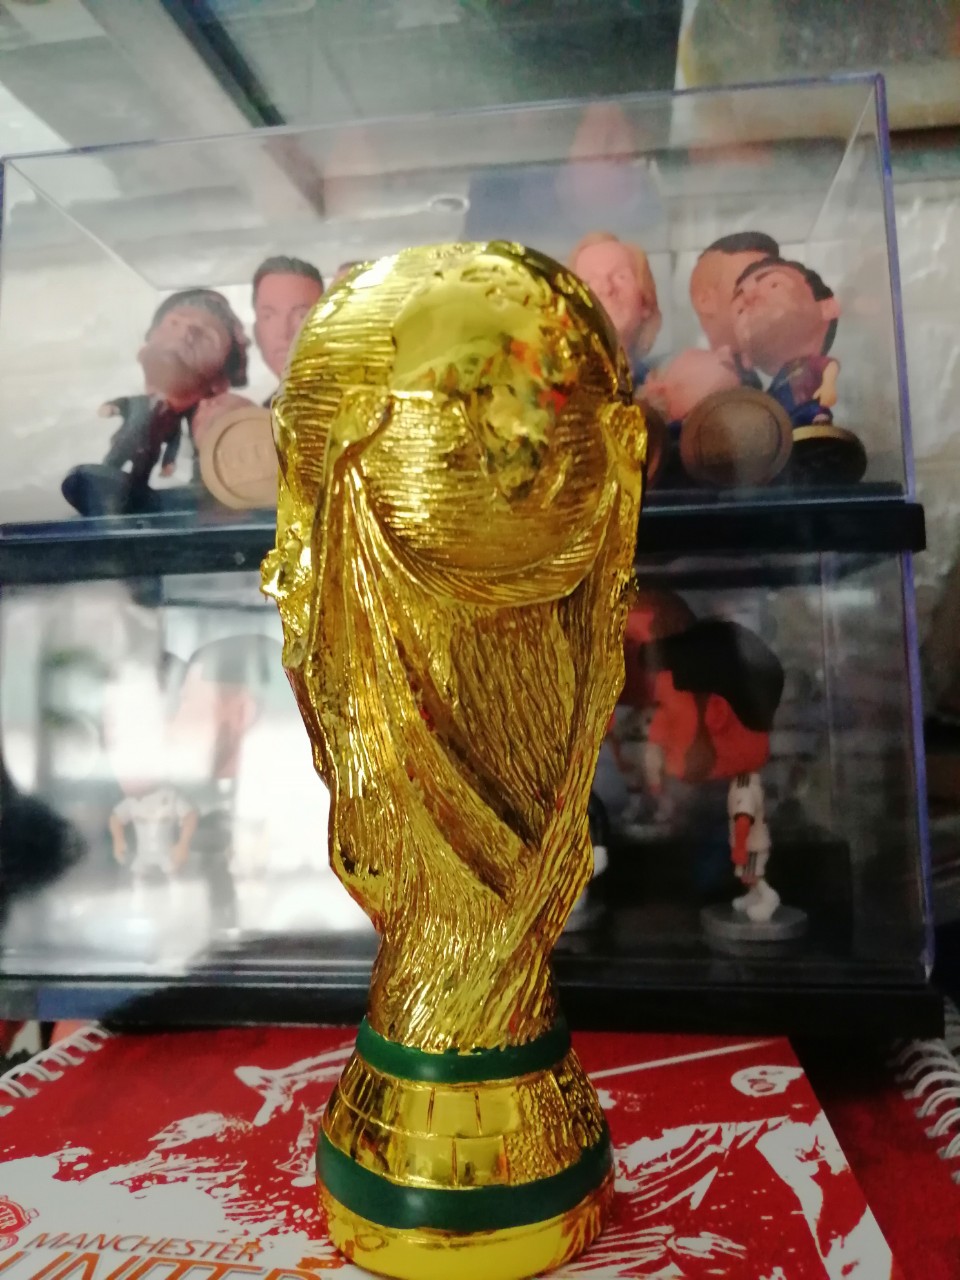 Xác định được 27 đội tuyển tham dự vòng chung kết World Cup 2022  Bóng đá   Vietnam VietnamPlus